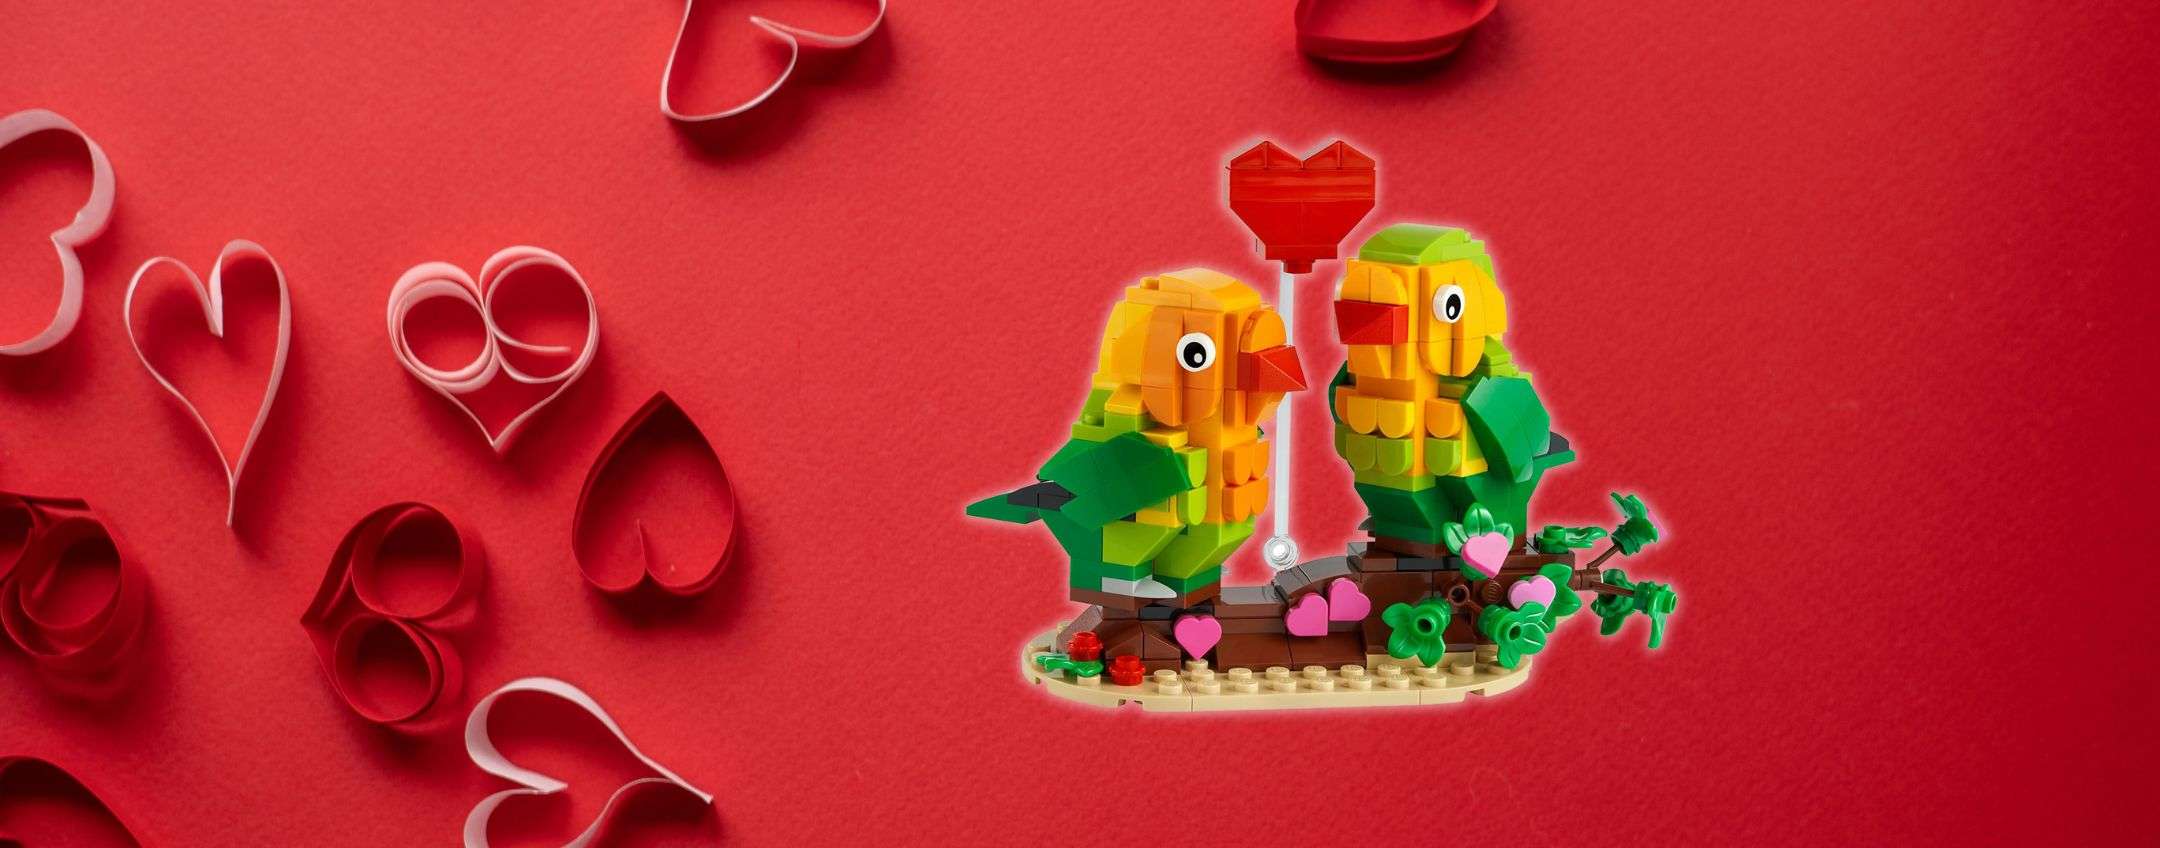 San Valentino è già arrivato con questo romantico set LEGO in offerta (-27%)